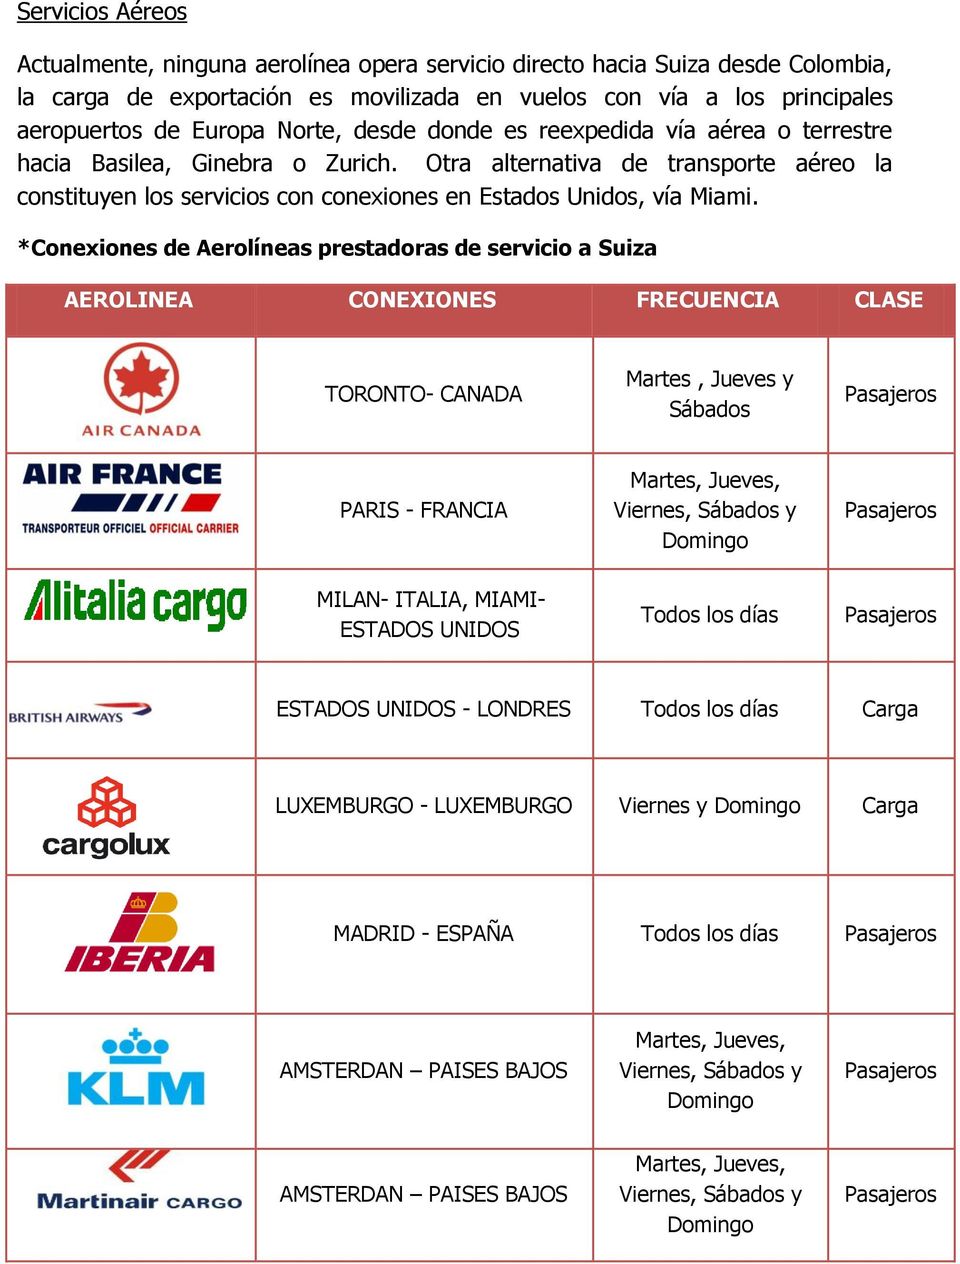 *Conexiones de Aerolíneas prestadoras de servicio a Suiza AEROLINEA CONEXIONES FRECUENCIA CLASE TORONTO- CANADA Martes, Jueves y Sábados Pasajeros PARIS - FRANCIA Martes, Jueves, Viernes, Sábados y